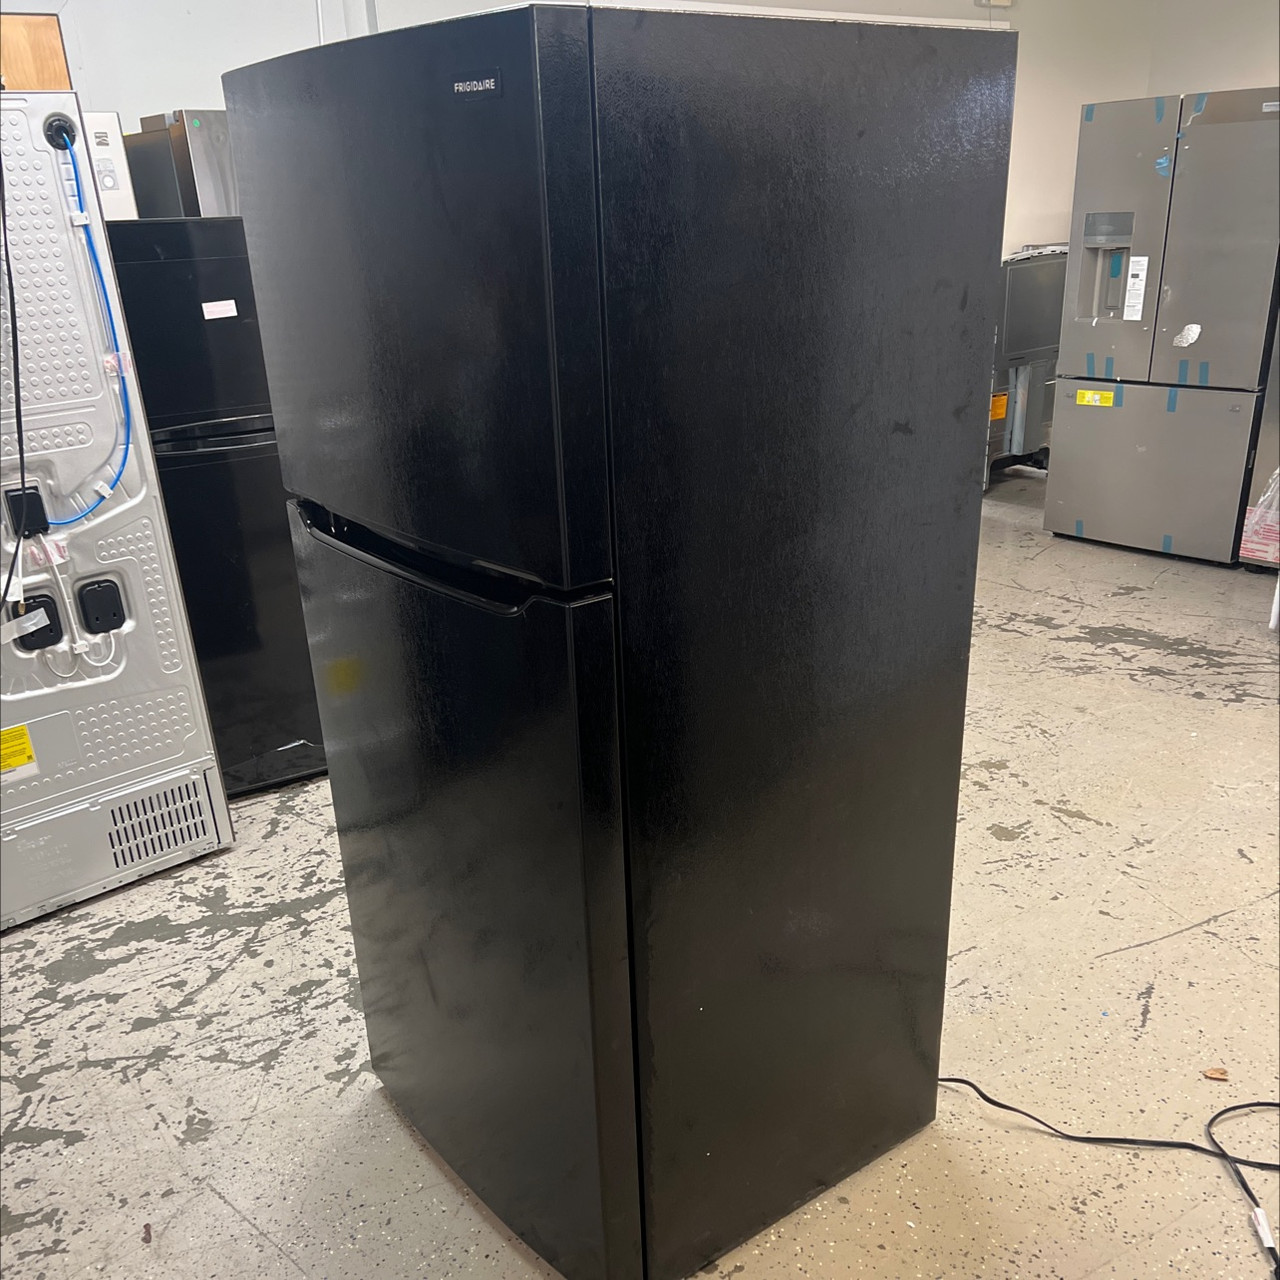 Frigidaire FFTR1814WB 18.3 Cu. ft. Top Freezer Refrigerator – Black